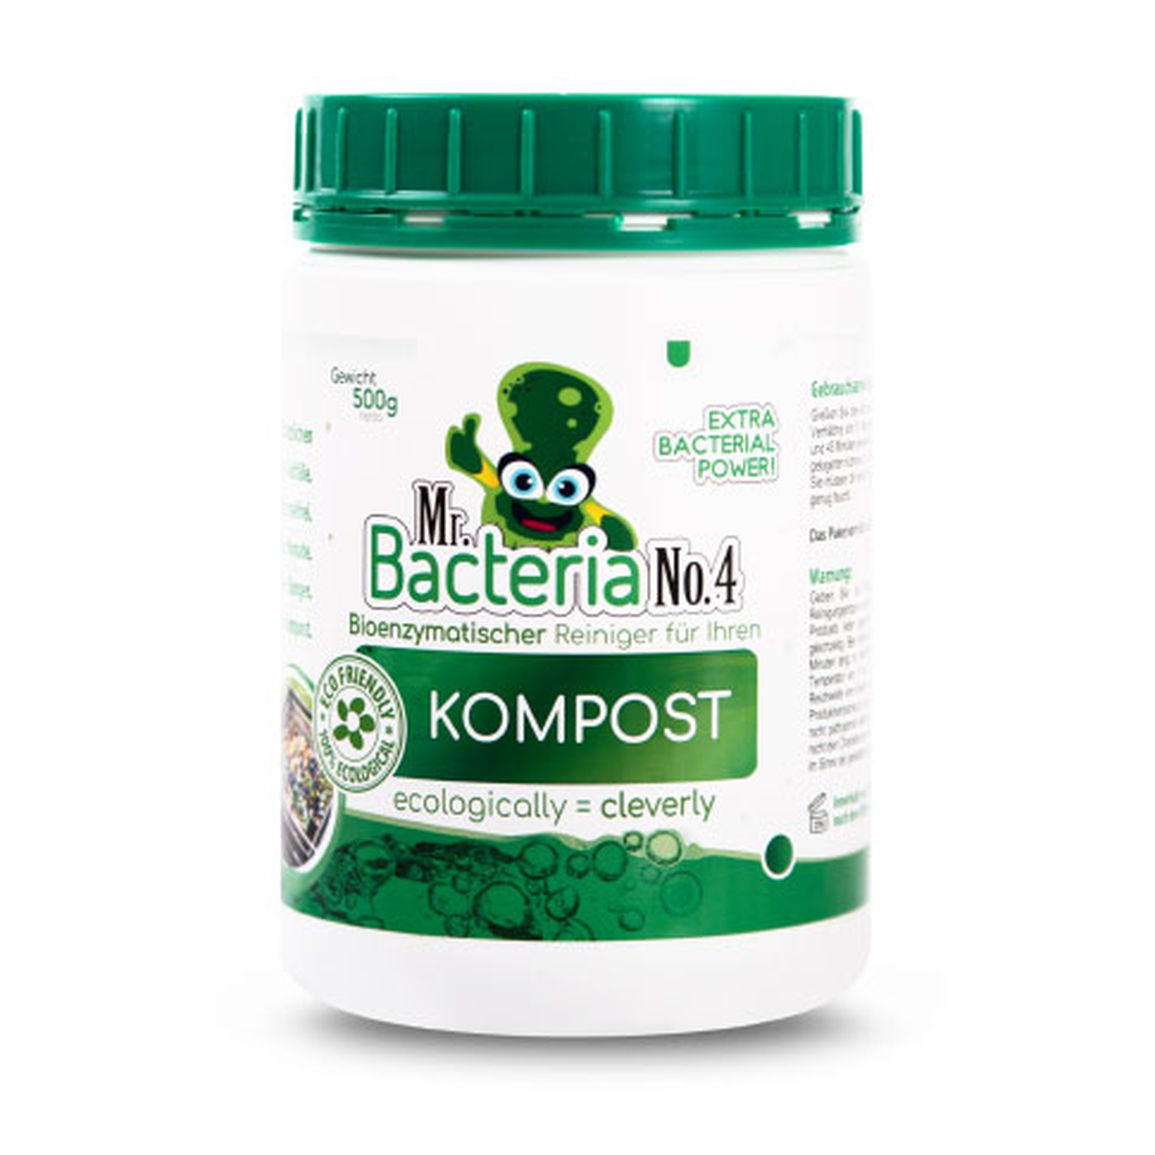 Mr.Bacteria No.4 Bioenzymatischer Reiniger für Ihren